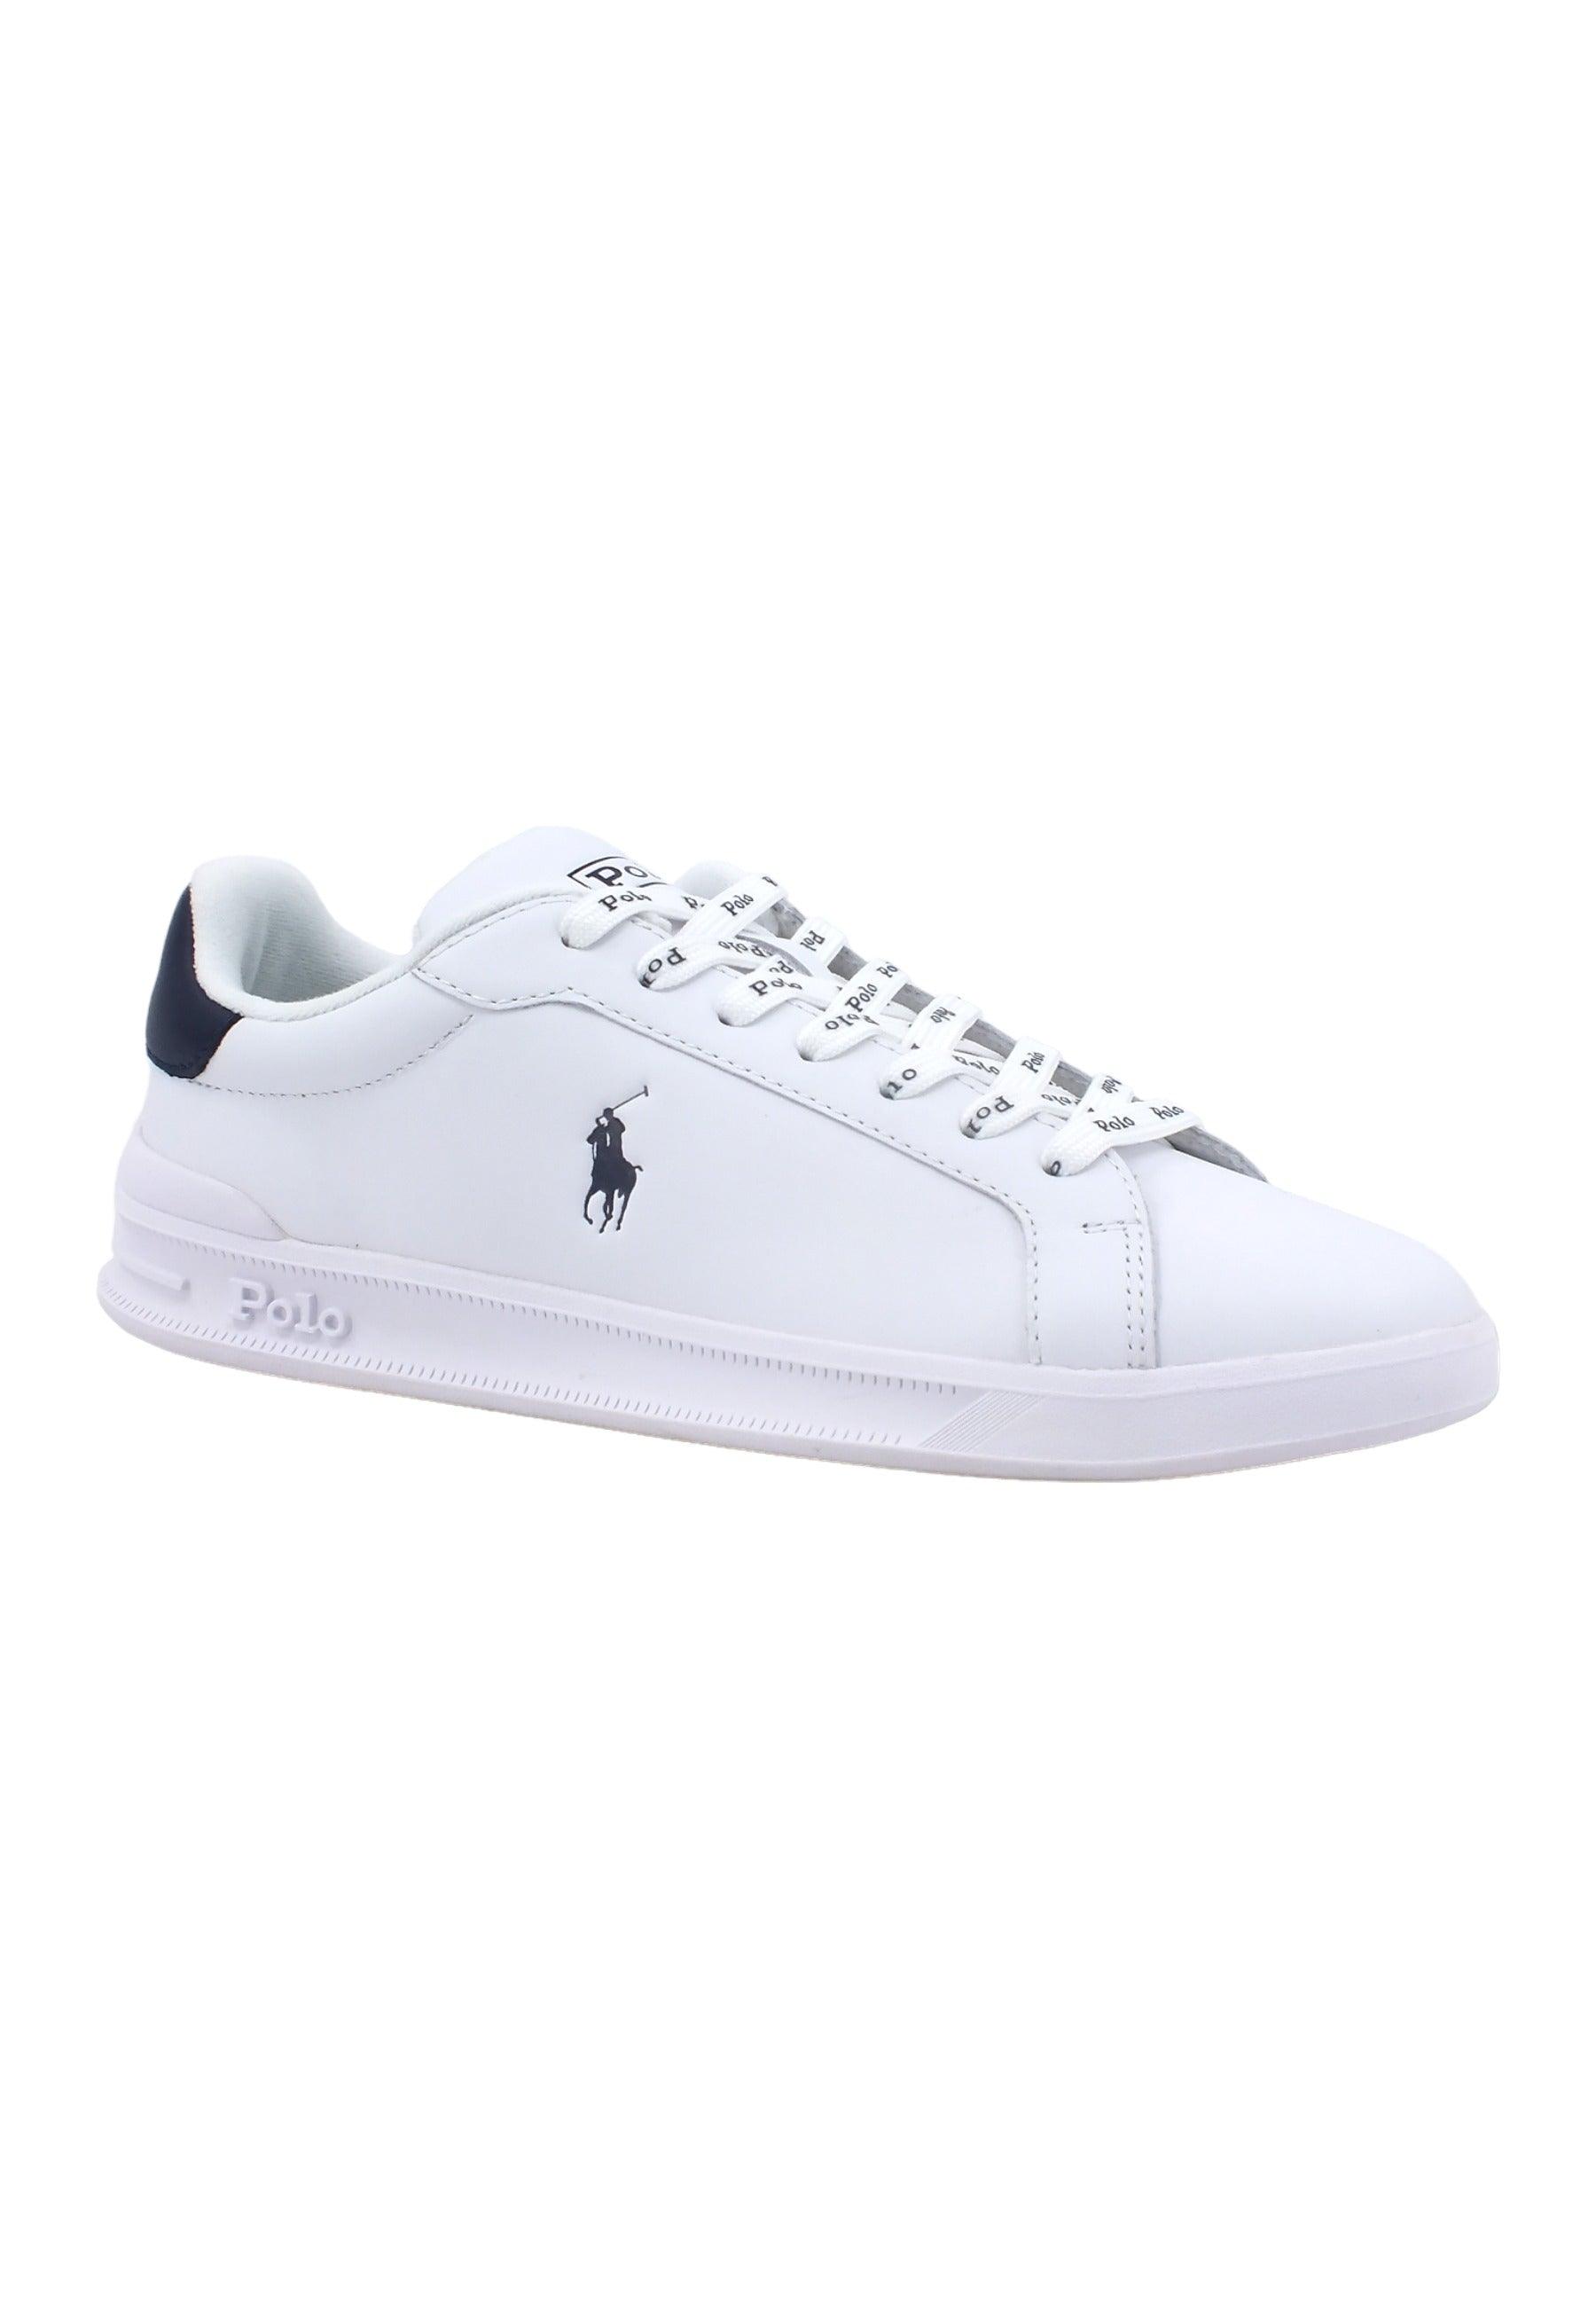 POLO RALPH LAUREN Sneaker Uomo White Navy 809829824003U - Sandrini Calzature e Abbigliamento